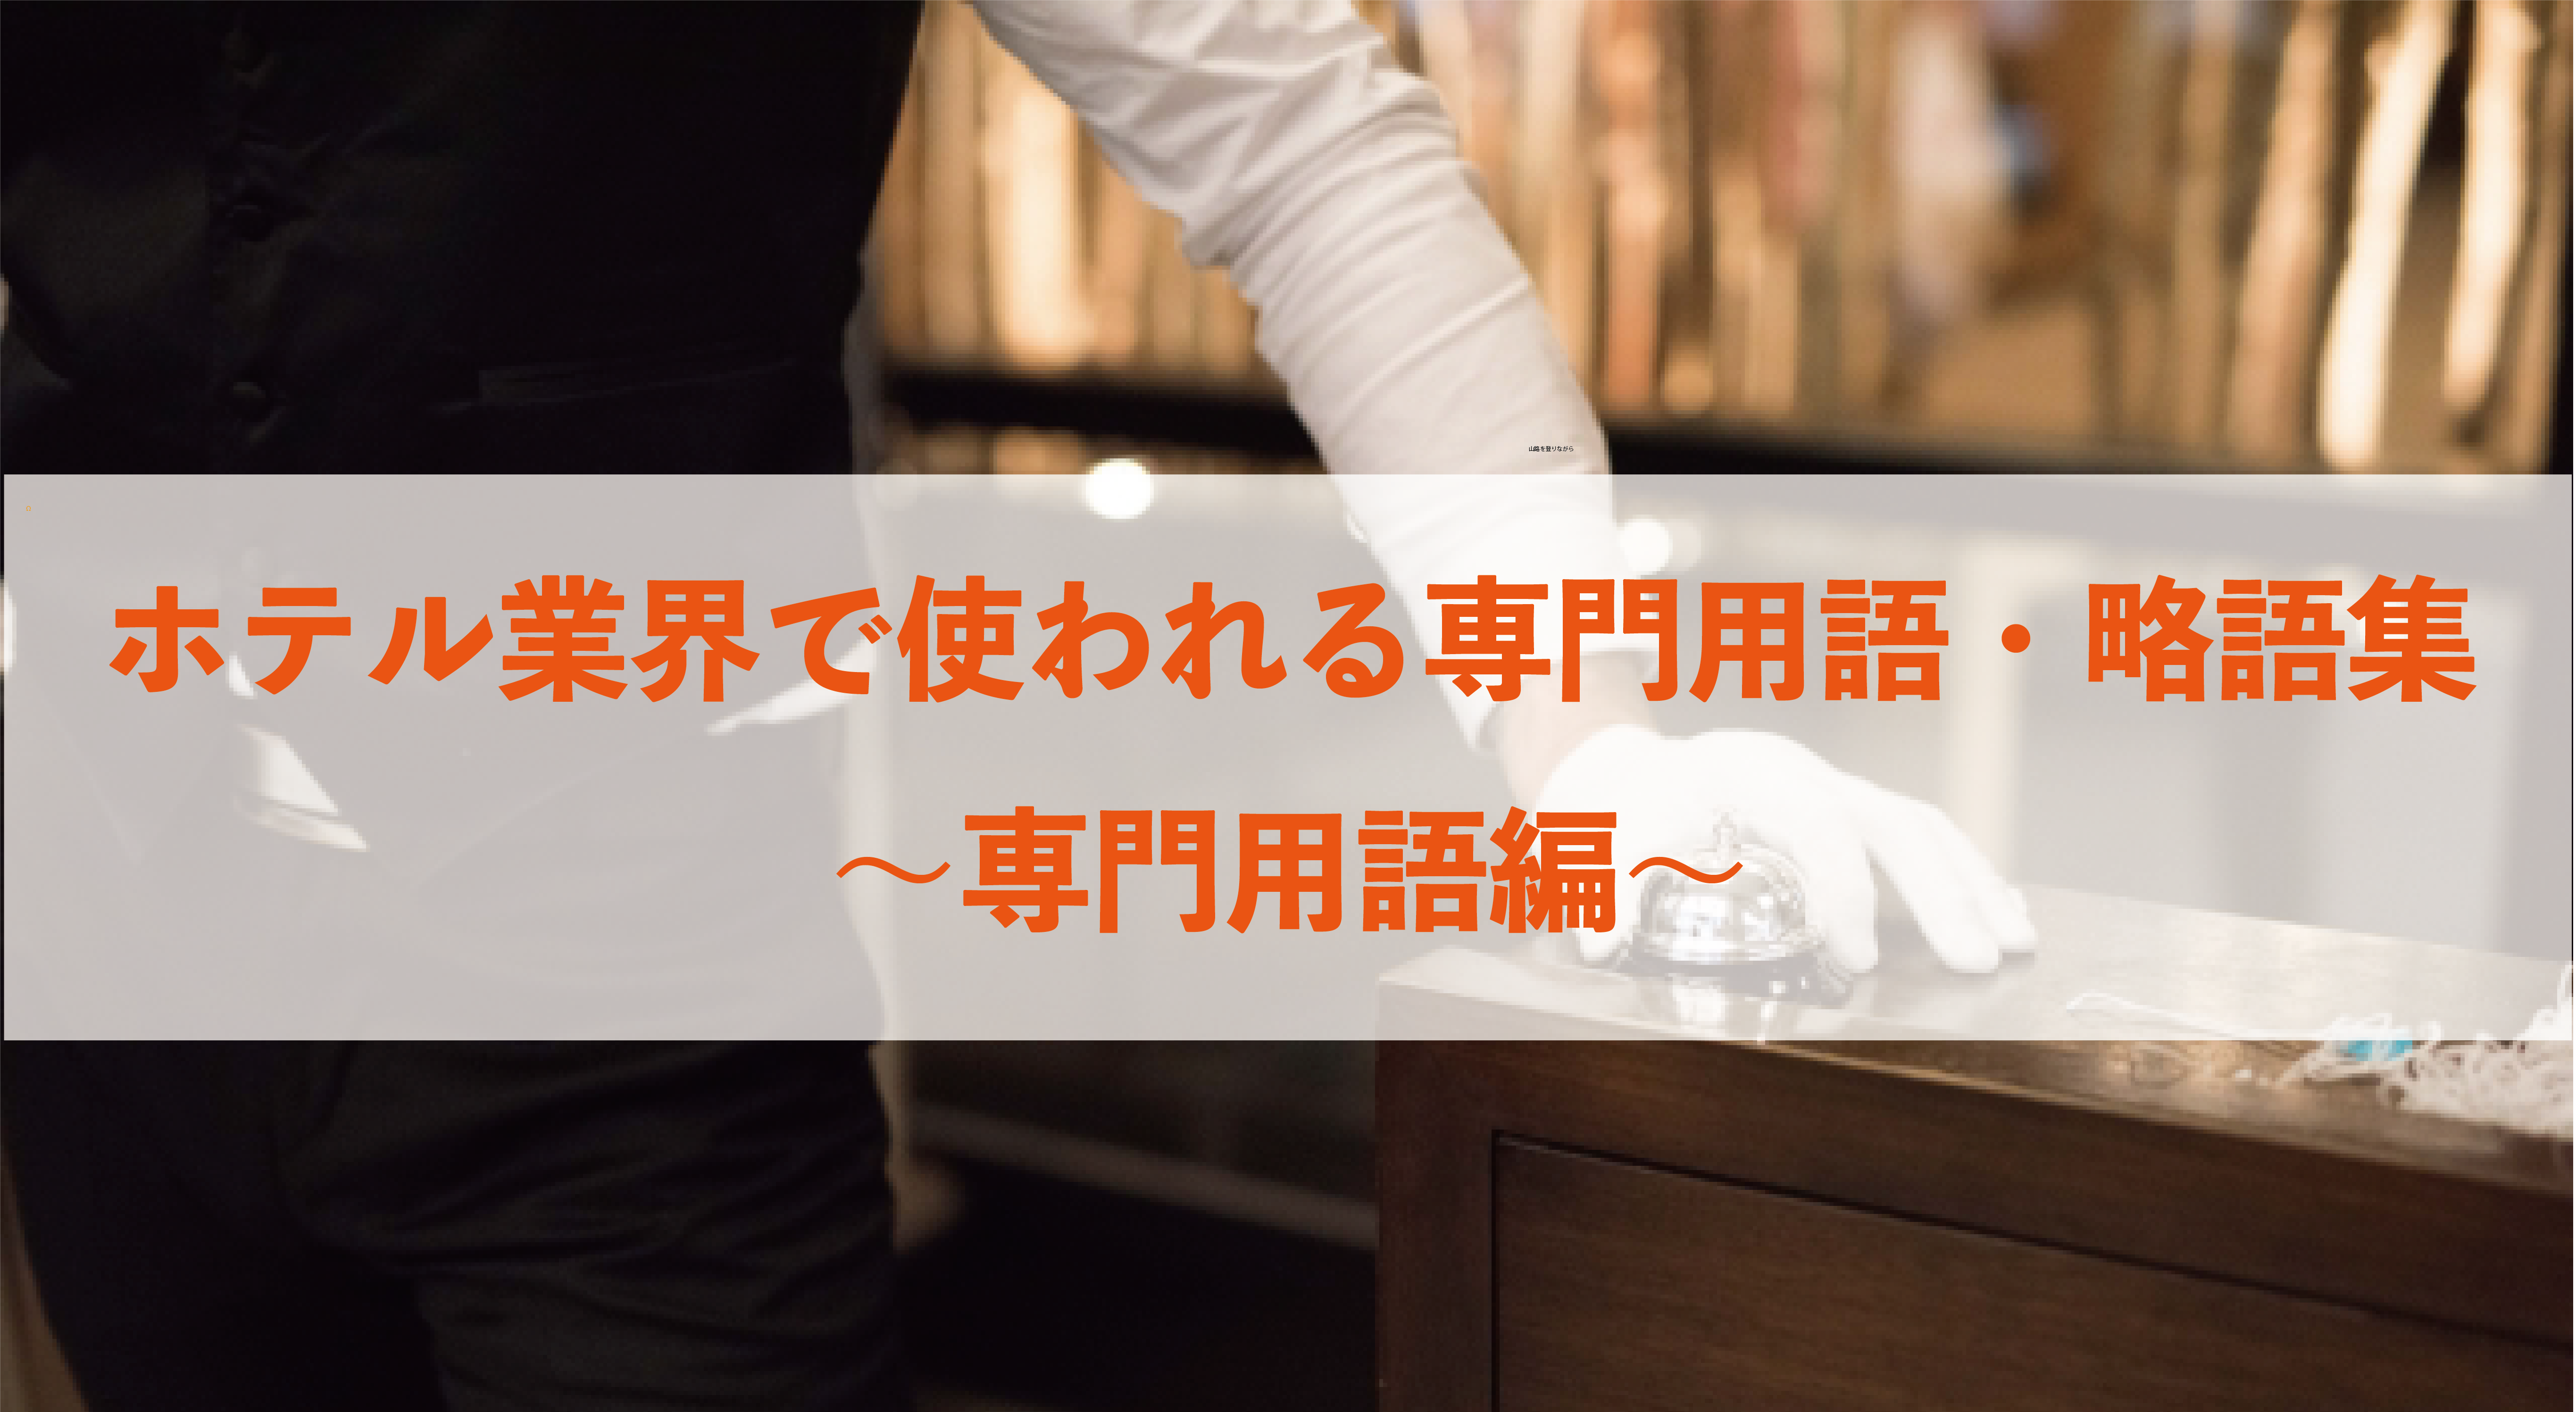 ホテル業界で使われる専門用語・略語集〜専門用語編〜